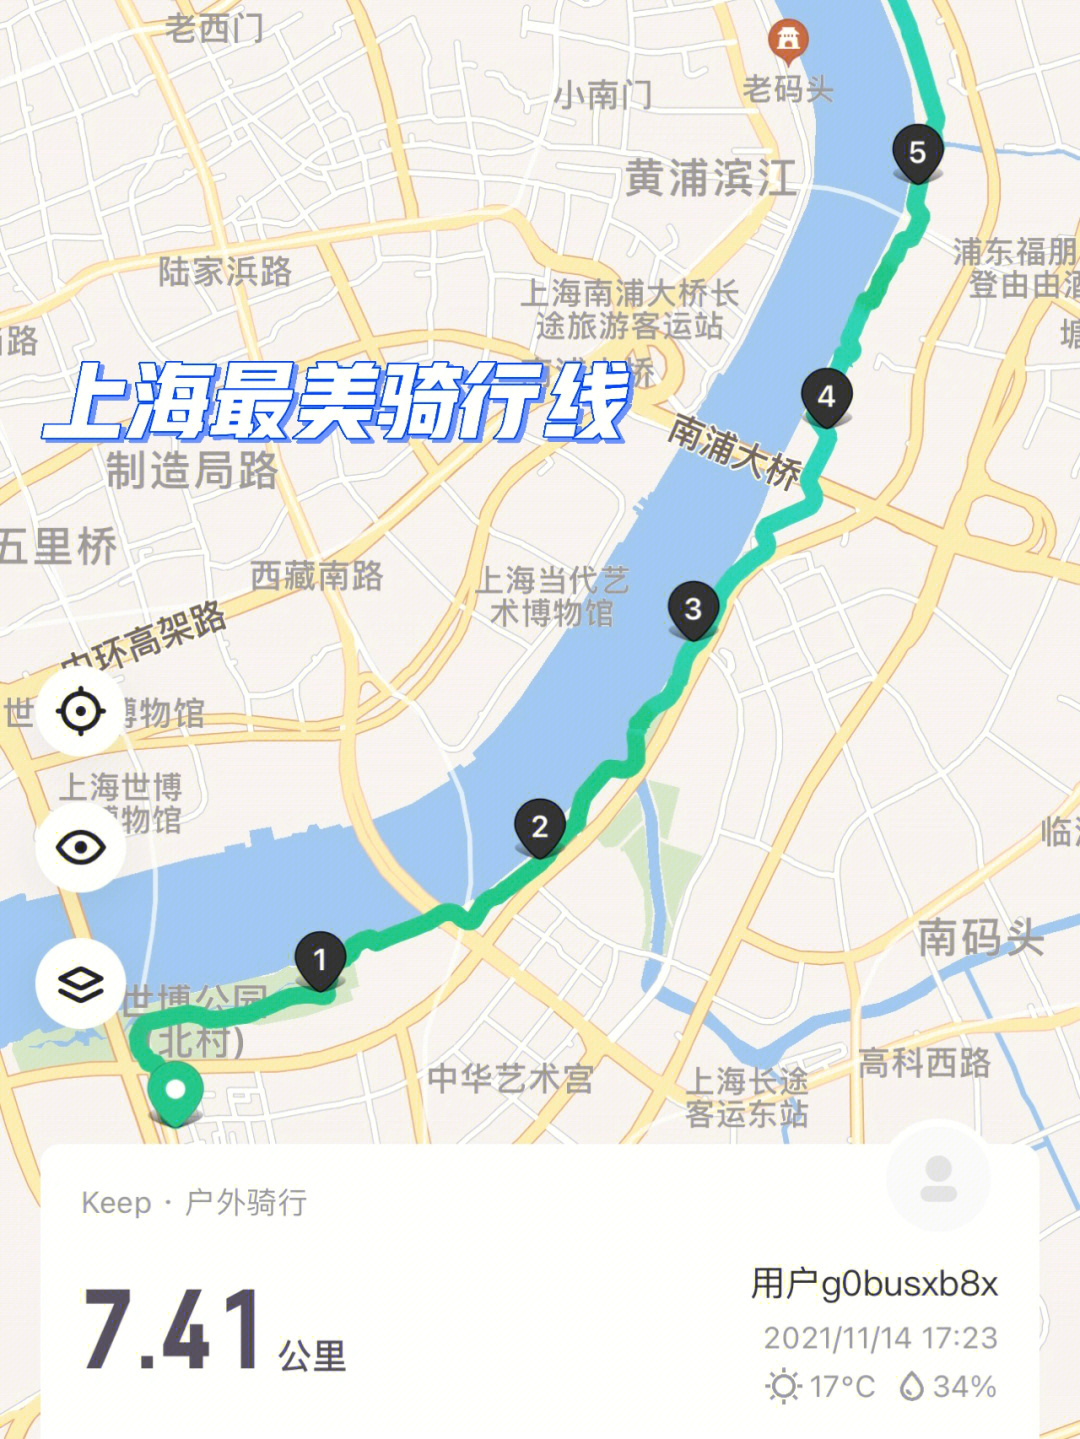 浦西滨江骑行路线图片